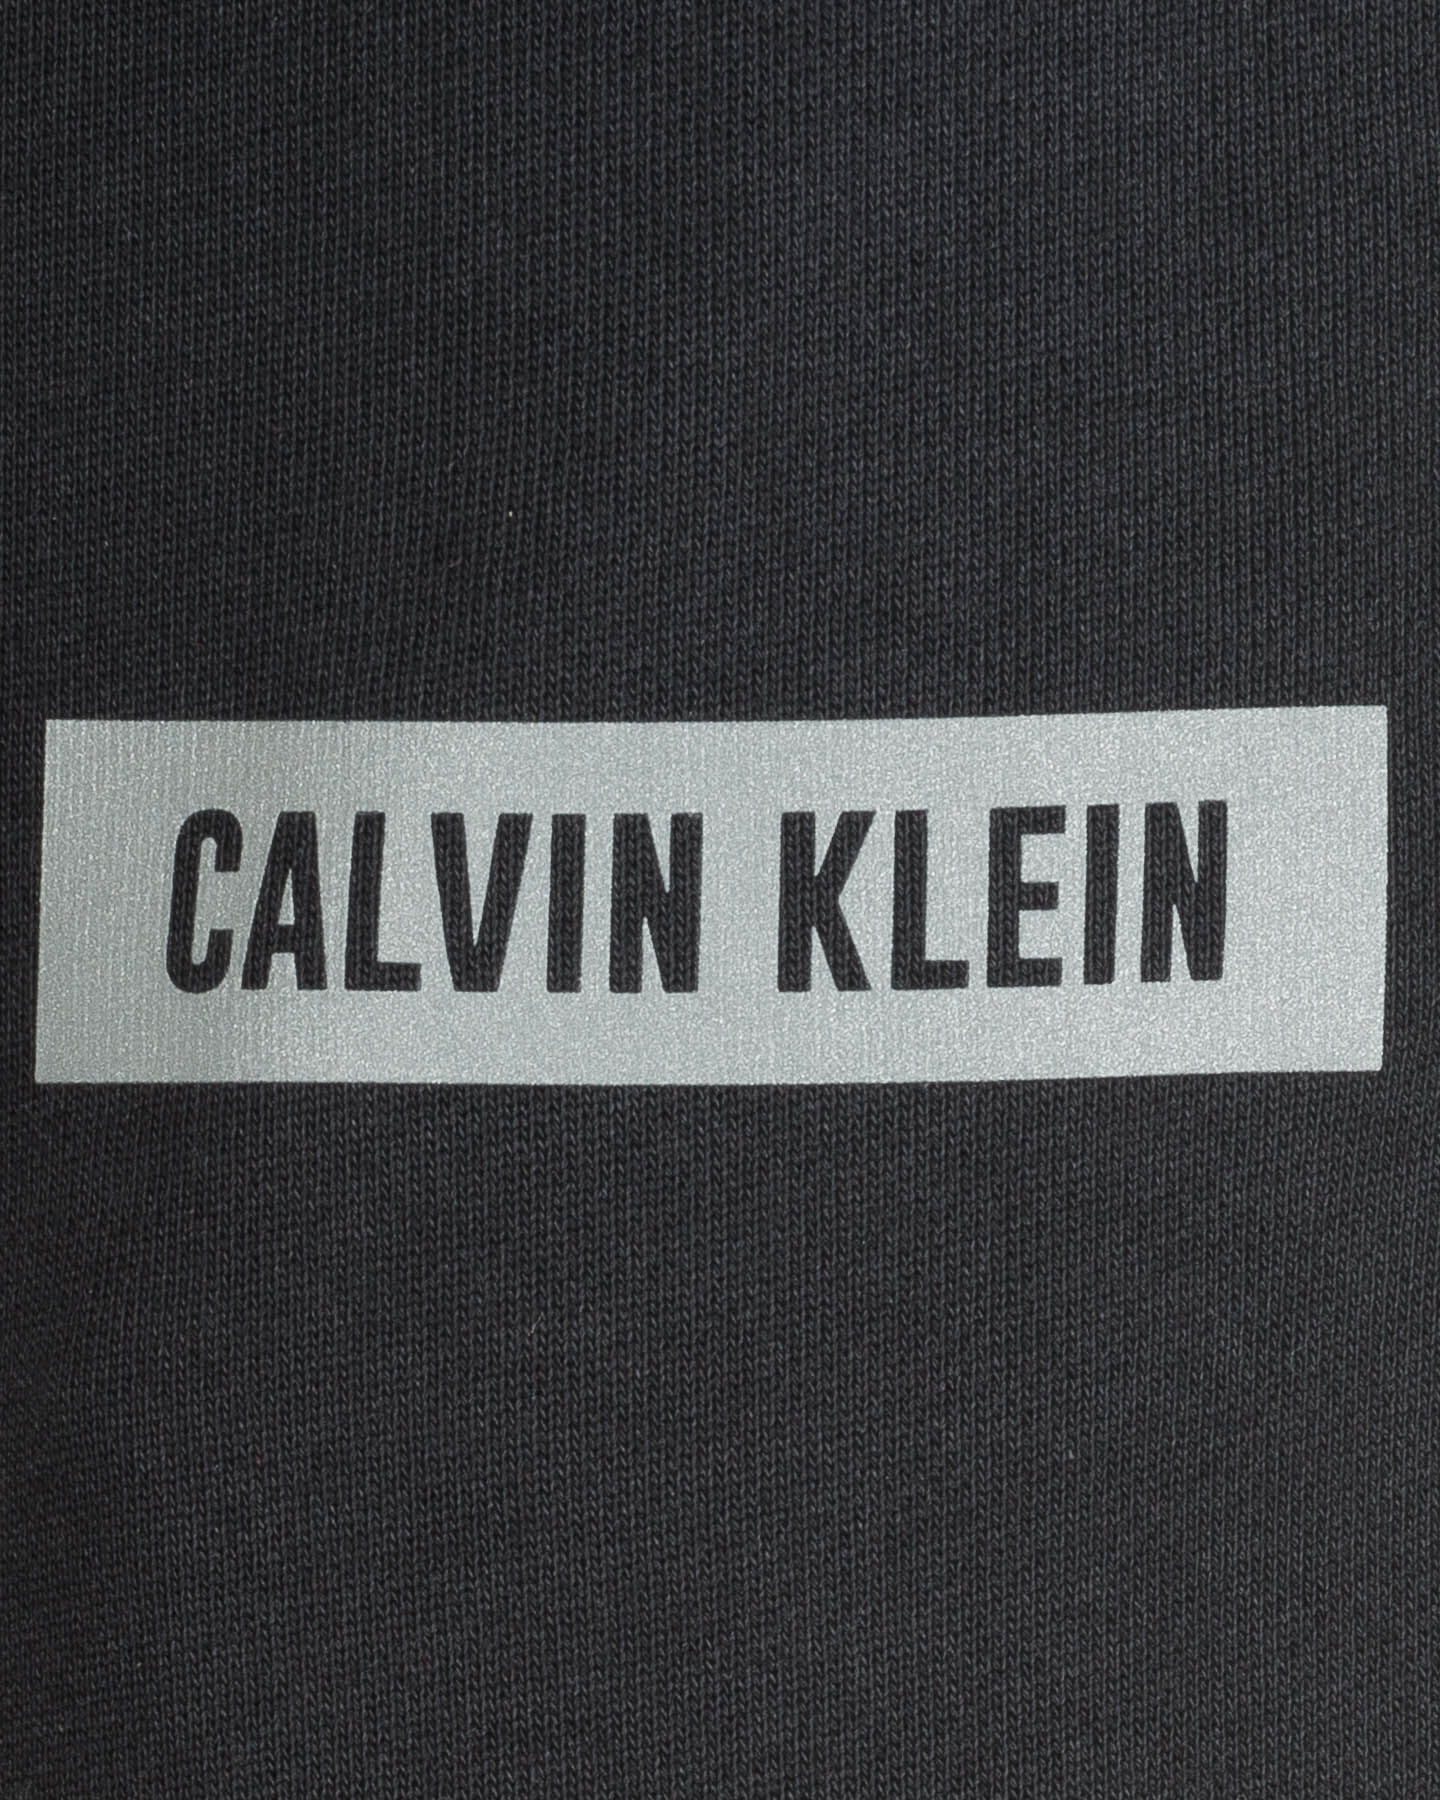  Pantalone CALVIN KLEIN SPORT SMALL LOGO  M S4082579|007|S scatto 2